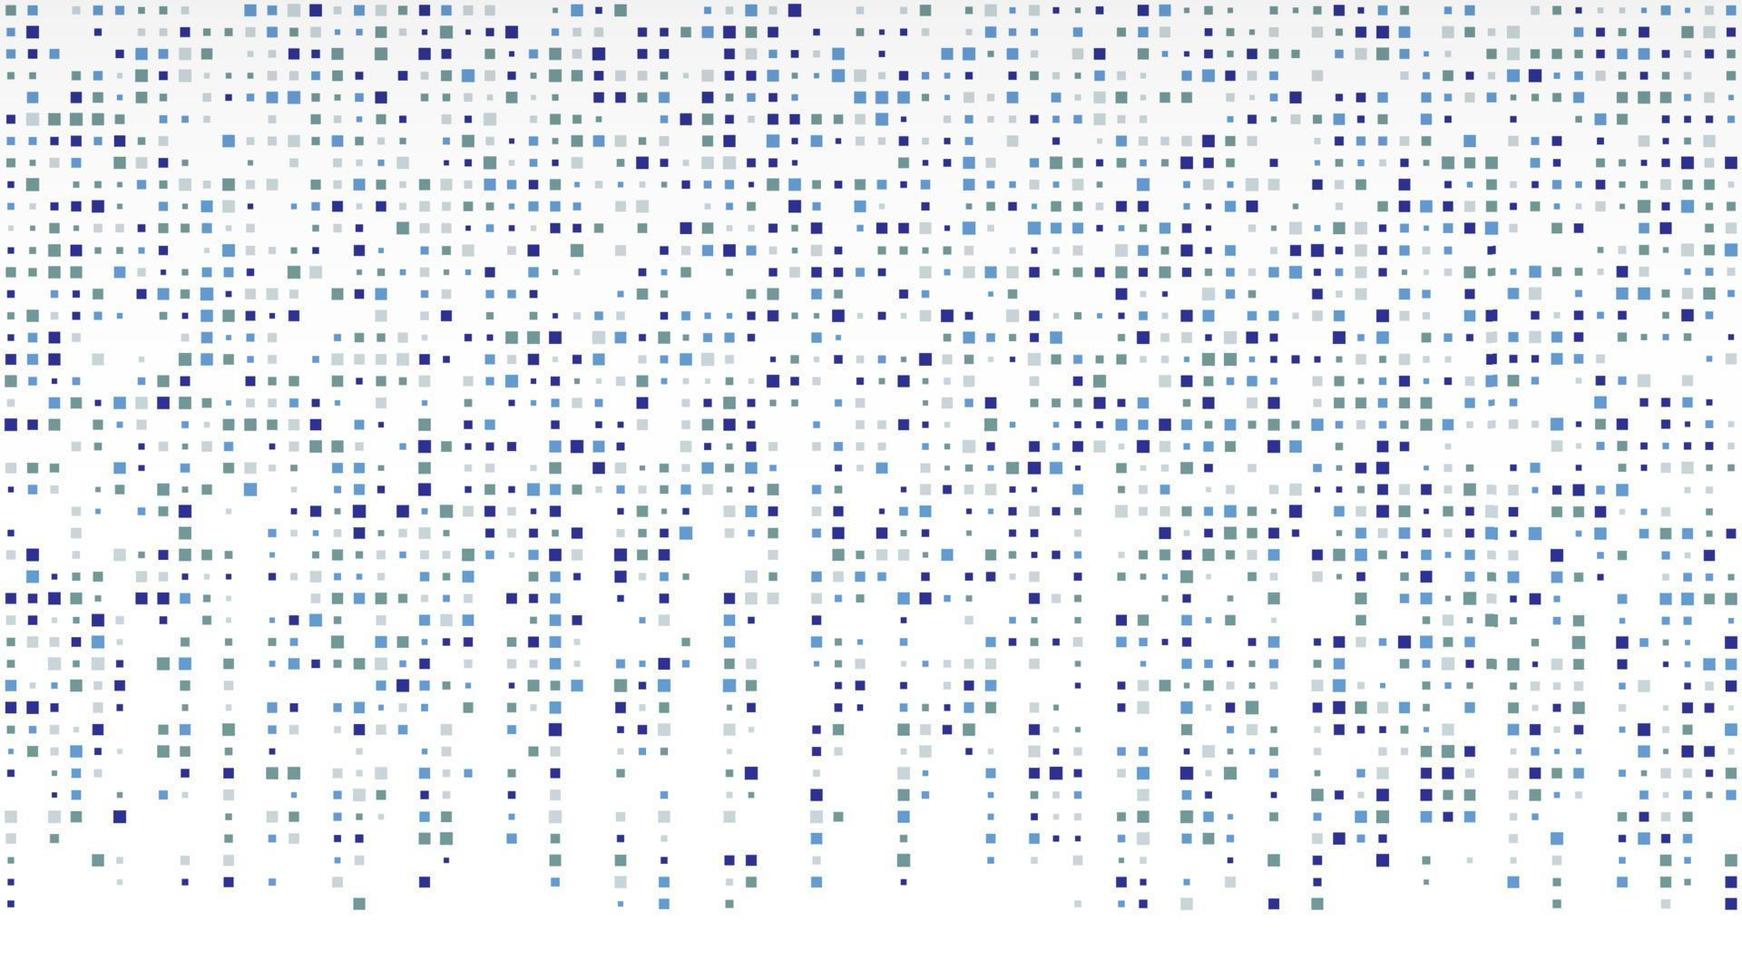 fondo geométrico abstracto de cuadrados. fondo de píxel azul con espacio vacío. ilustración vectorial vector